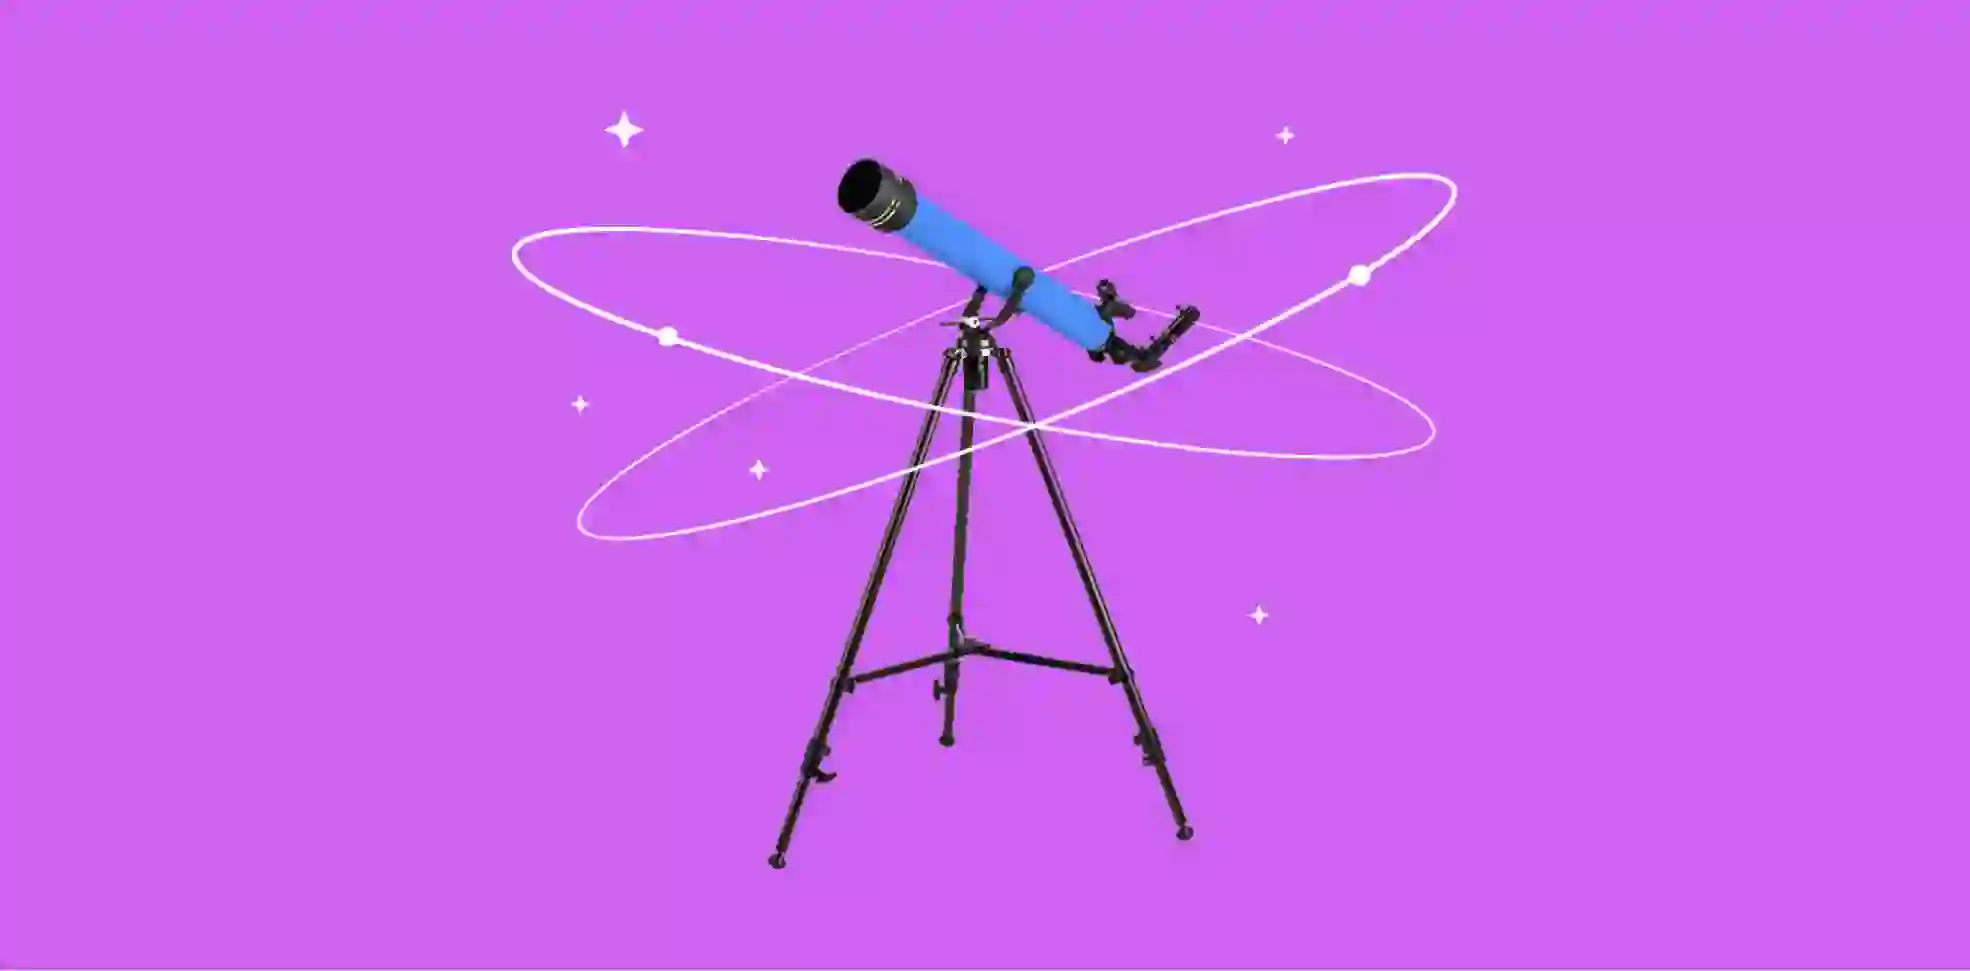 telescopio sobre fondo morado